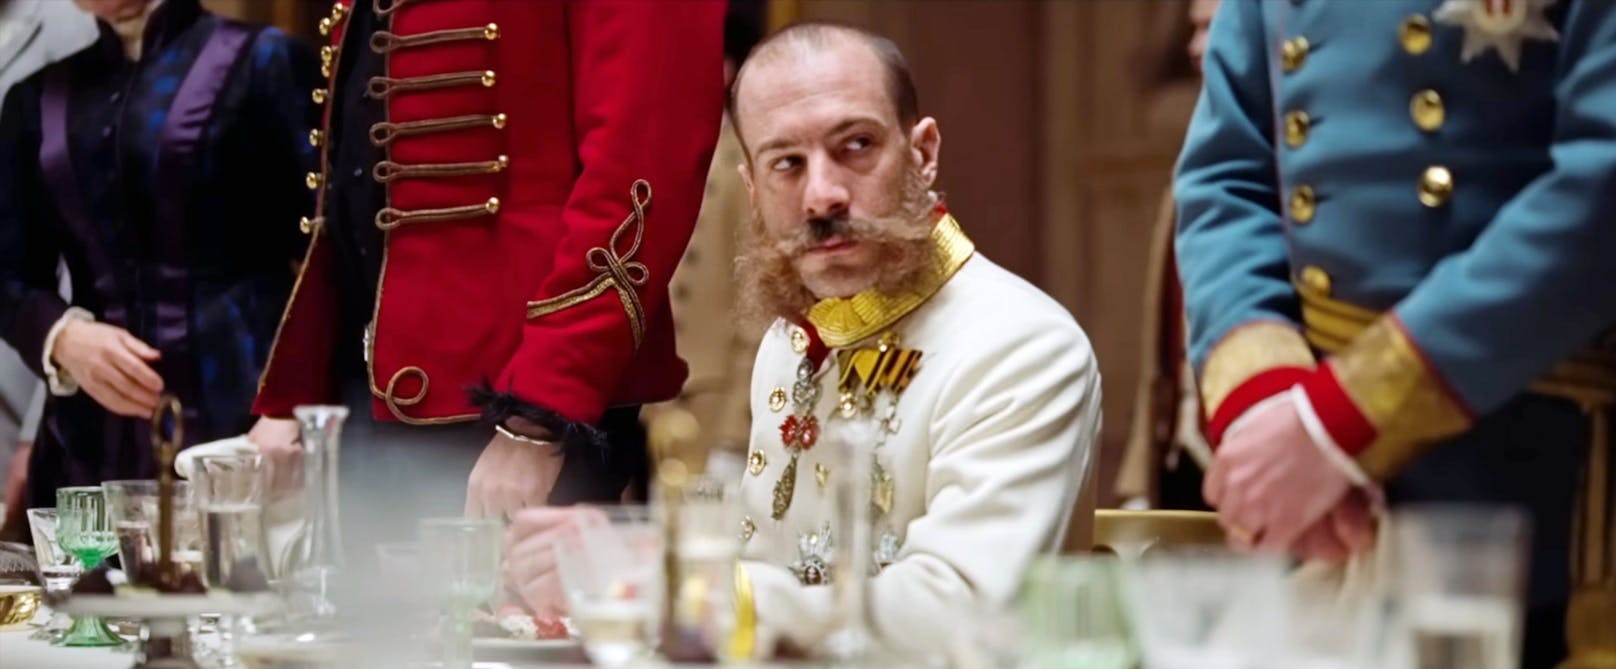 Florian Teichtmeister spielte Kaiser Franz Joseph im Historiendrama "Corsage". Dieser Film wurde 2022 als österreichischer Kandidat für die Oscarverleihung 2023 ausgewählt.